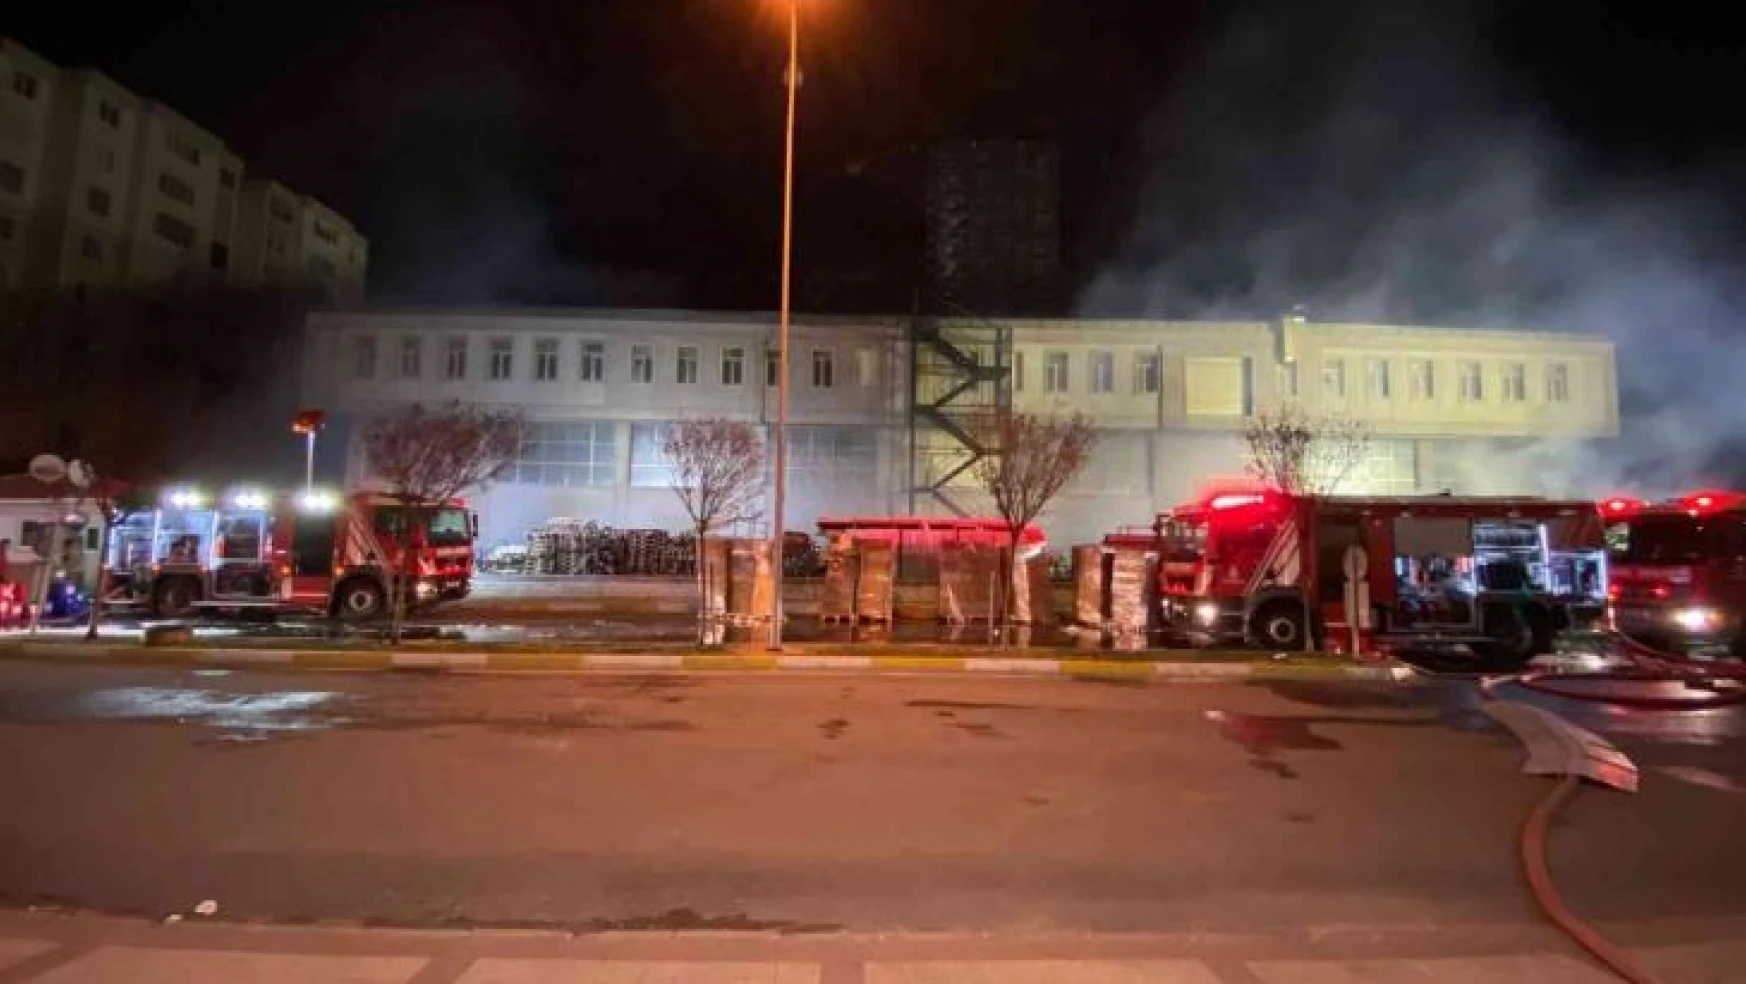 Beylikdüzü'nde 14 saattir yanan fabrikada itfaiyenin çalışması sürüyor, bir bina tedbir amaçlı boşaltıldı